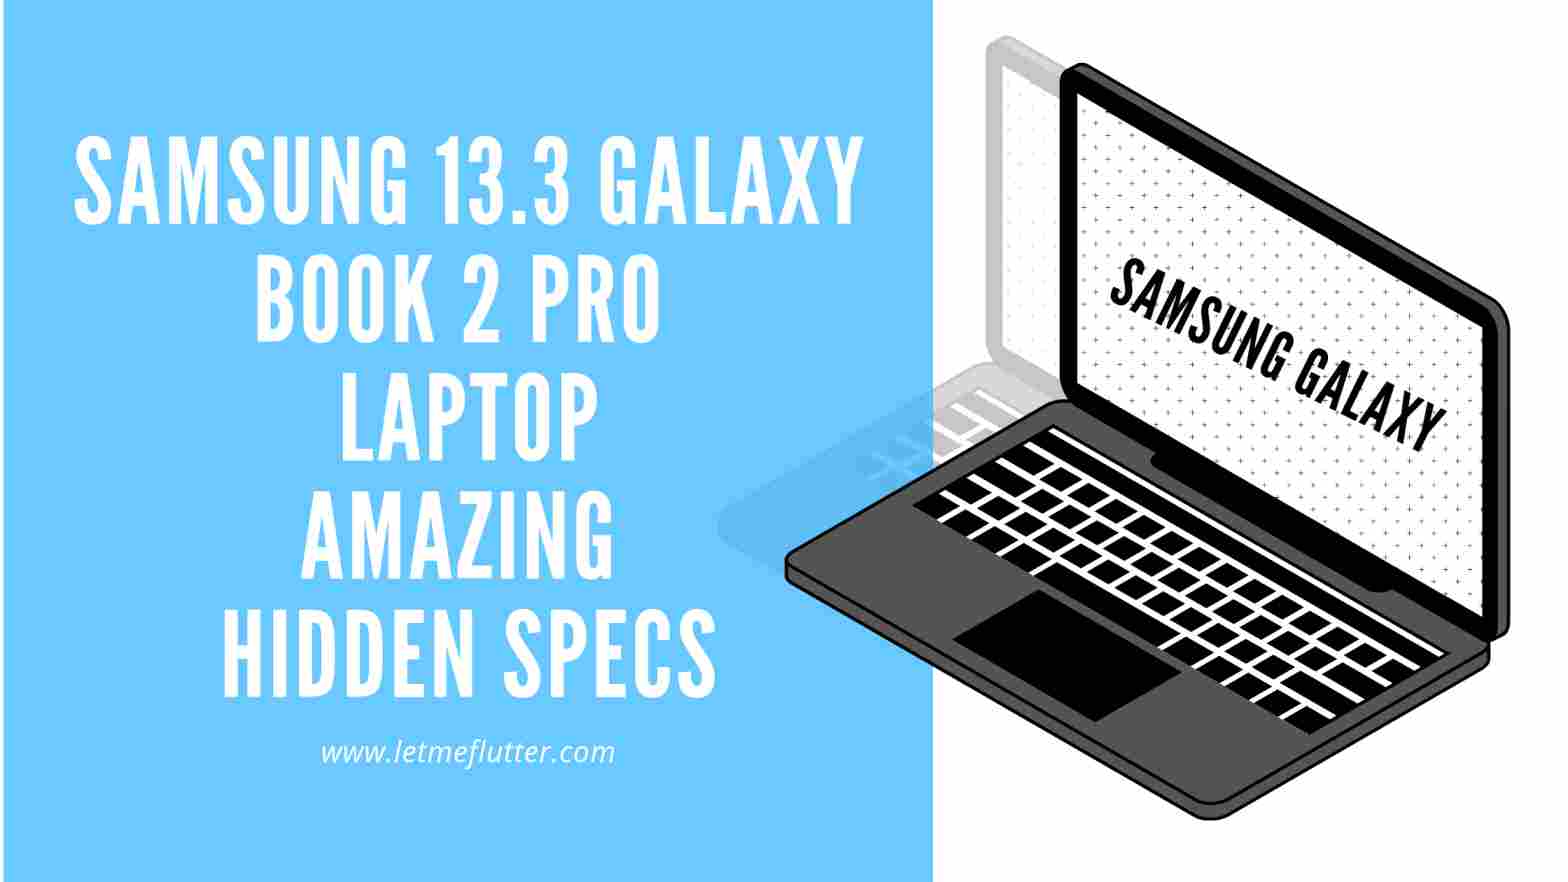 Samsung 13.3 Galaxy Book 2 pro laptop